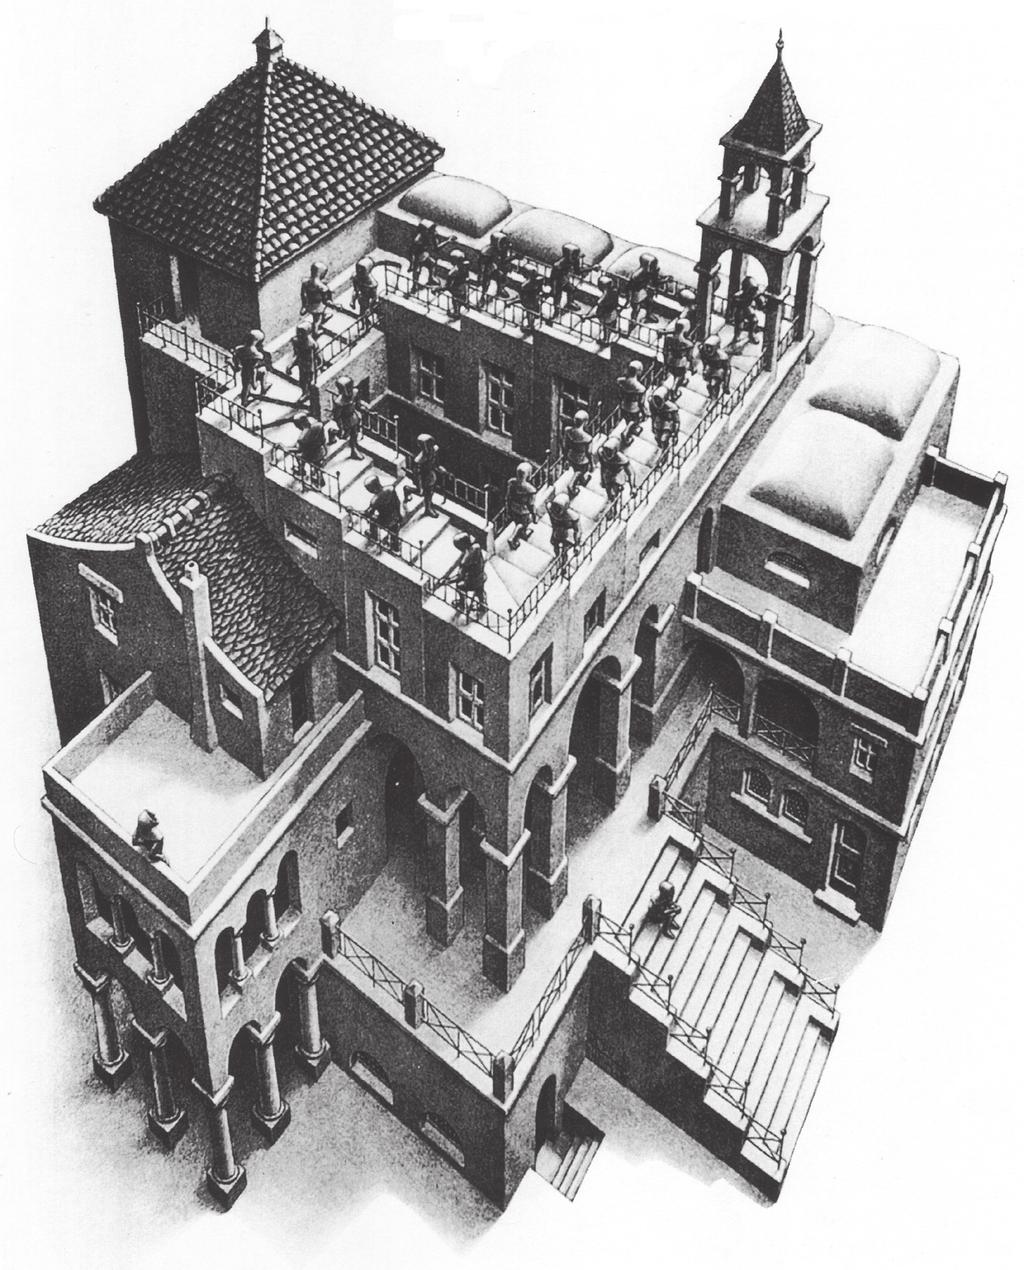 Ο κύριος εκπρόσωπος όμως των αδύνατων κόσμων είναι ο Maurits Cornelis Escher. Είναι πάρα πολλά τα έργα του Escher που αναφέρονται σε αδύνατα αντικείμενα.